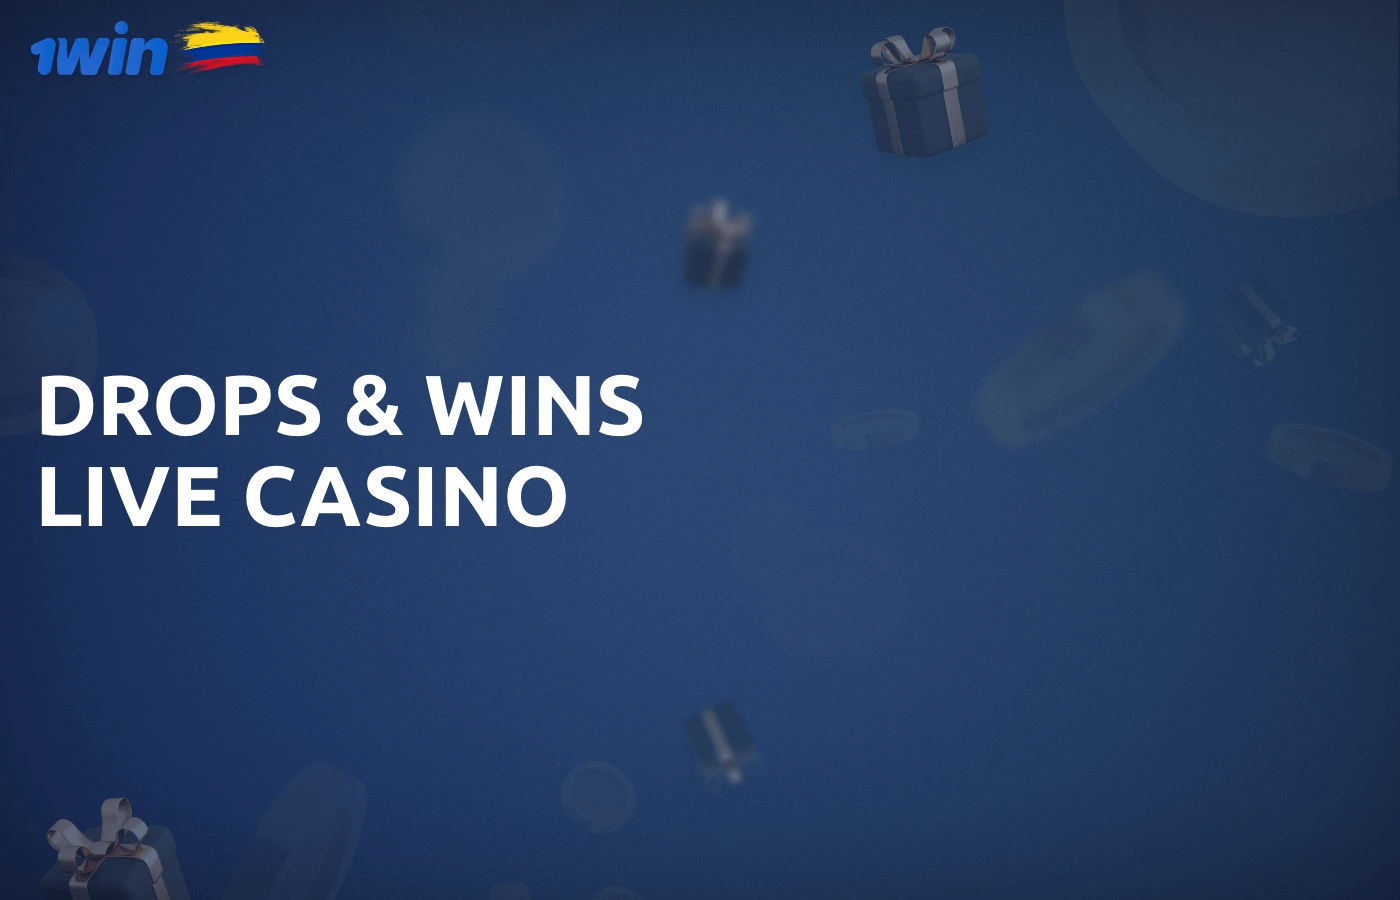 Bono especial de casino en vivo Drops & Wins que se aplica a determinados juegos con crupier en vivo en 1win.